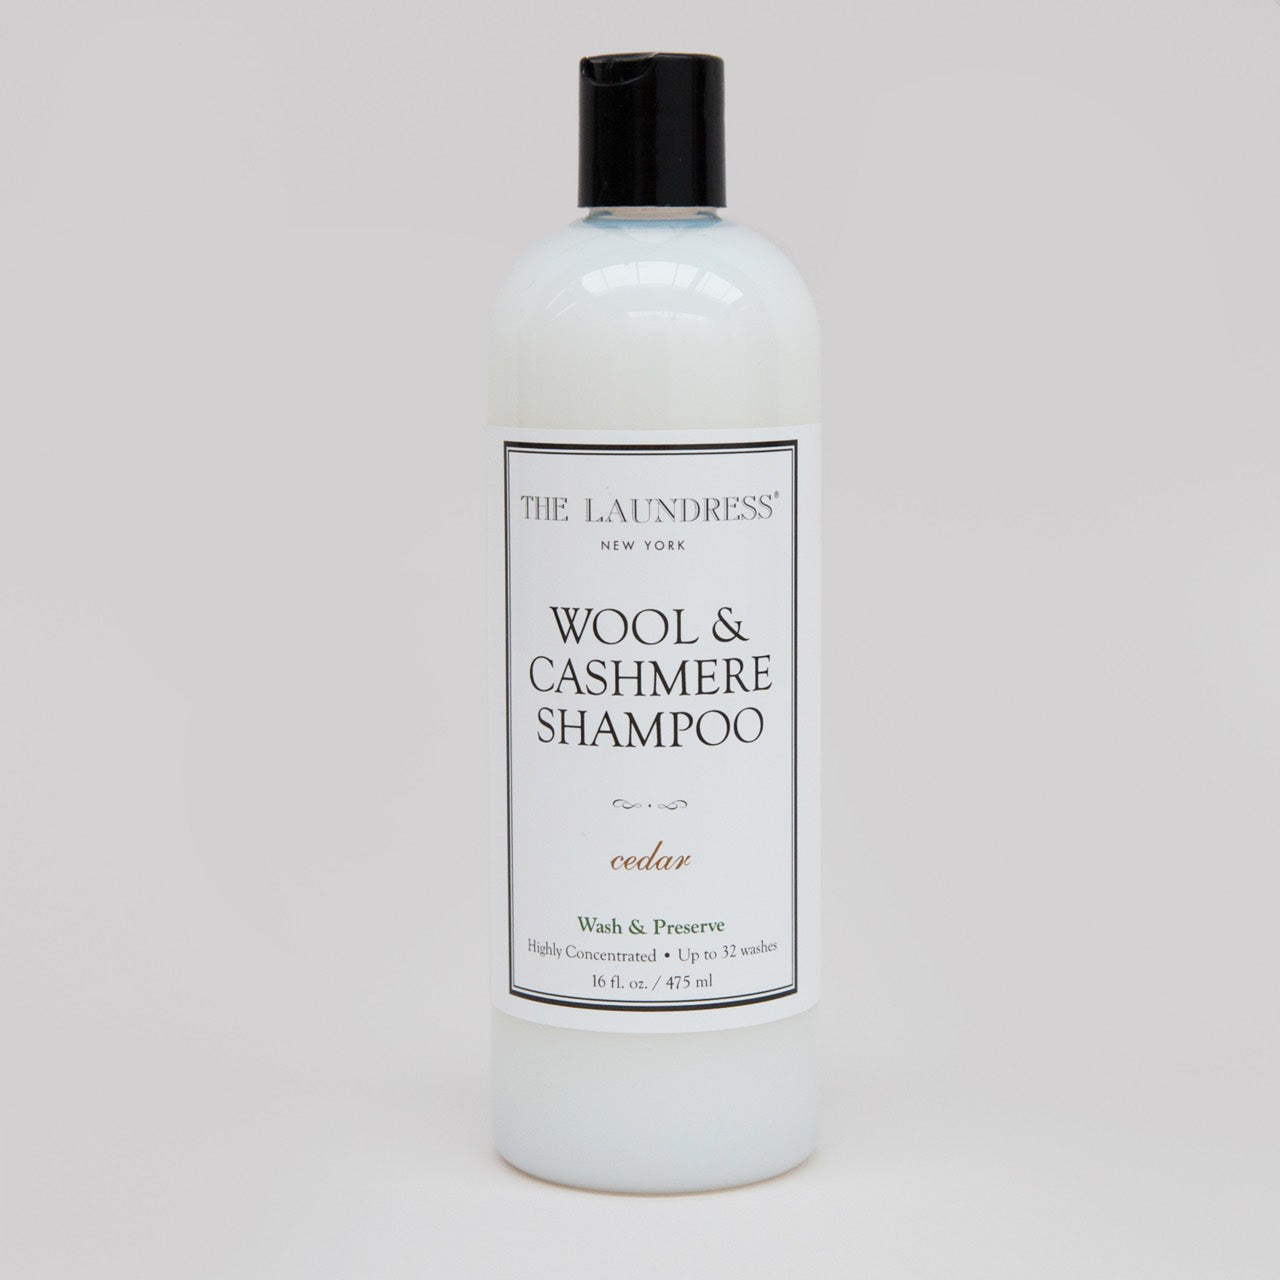 Wool & cashmere shampoo